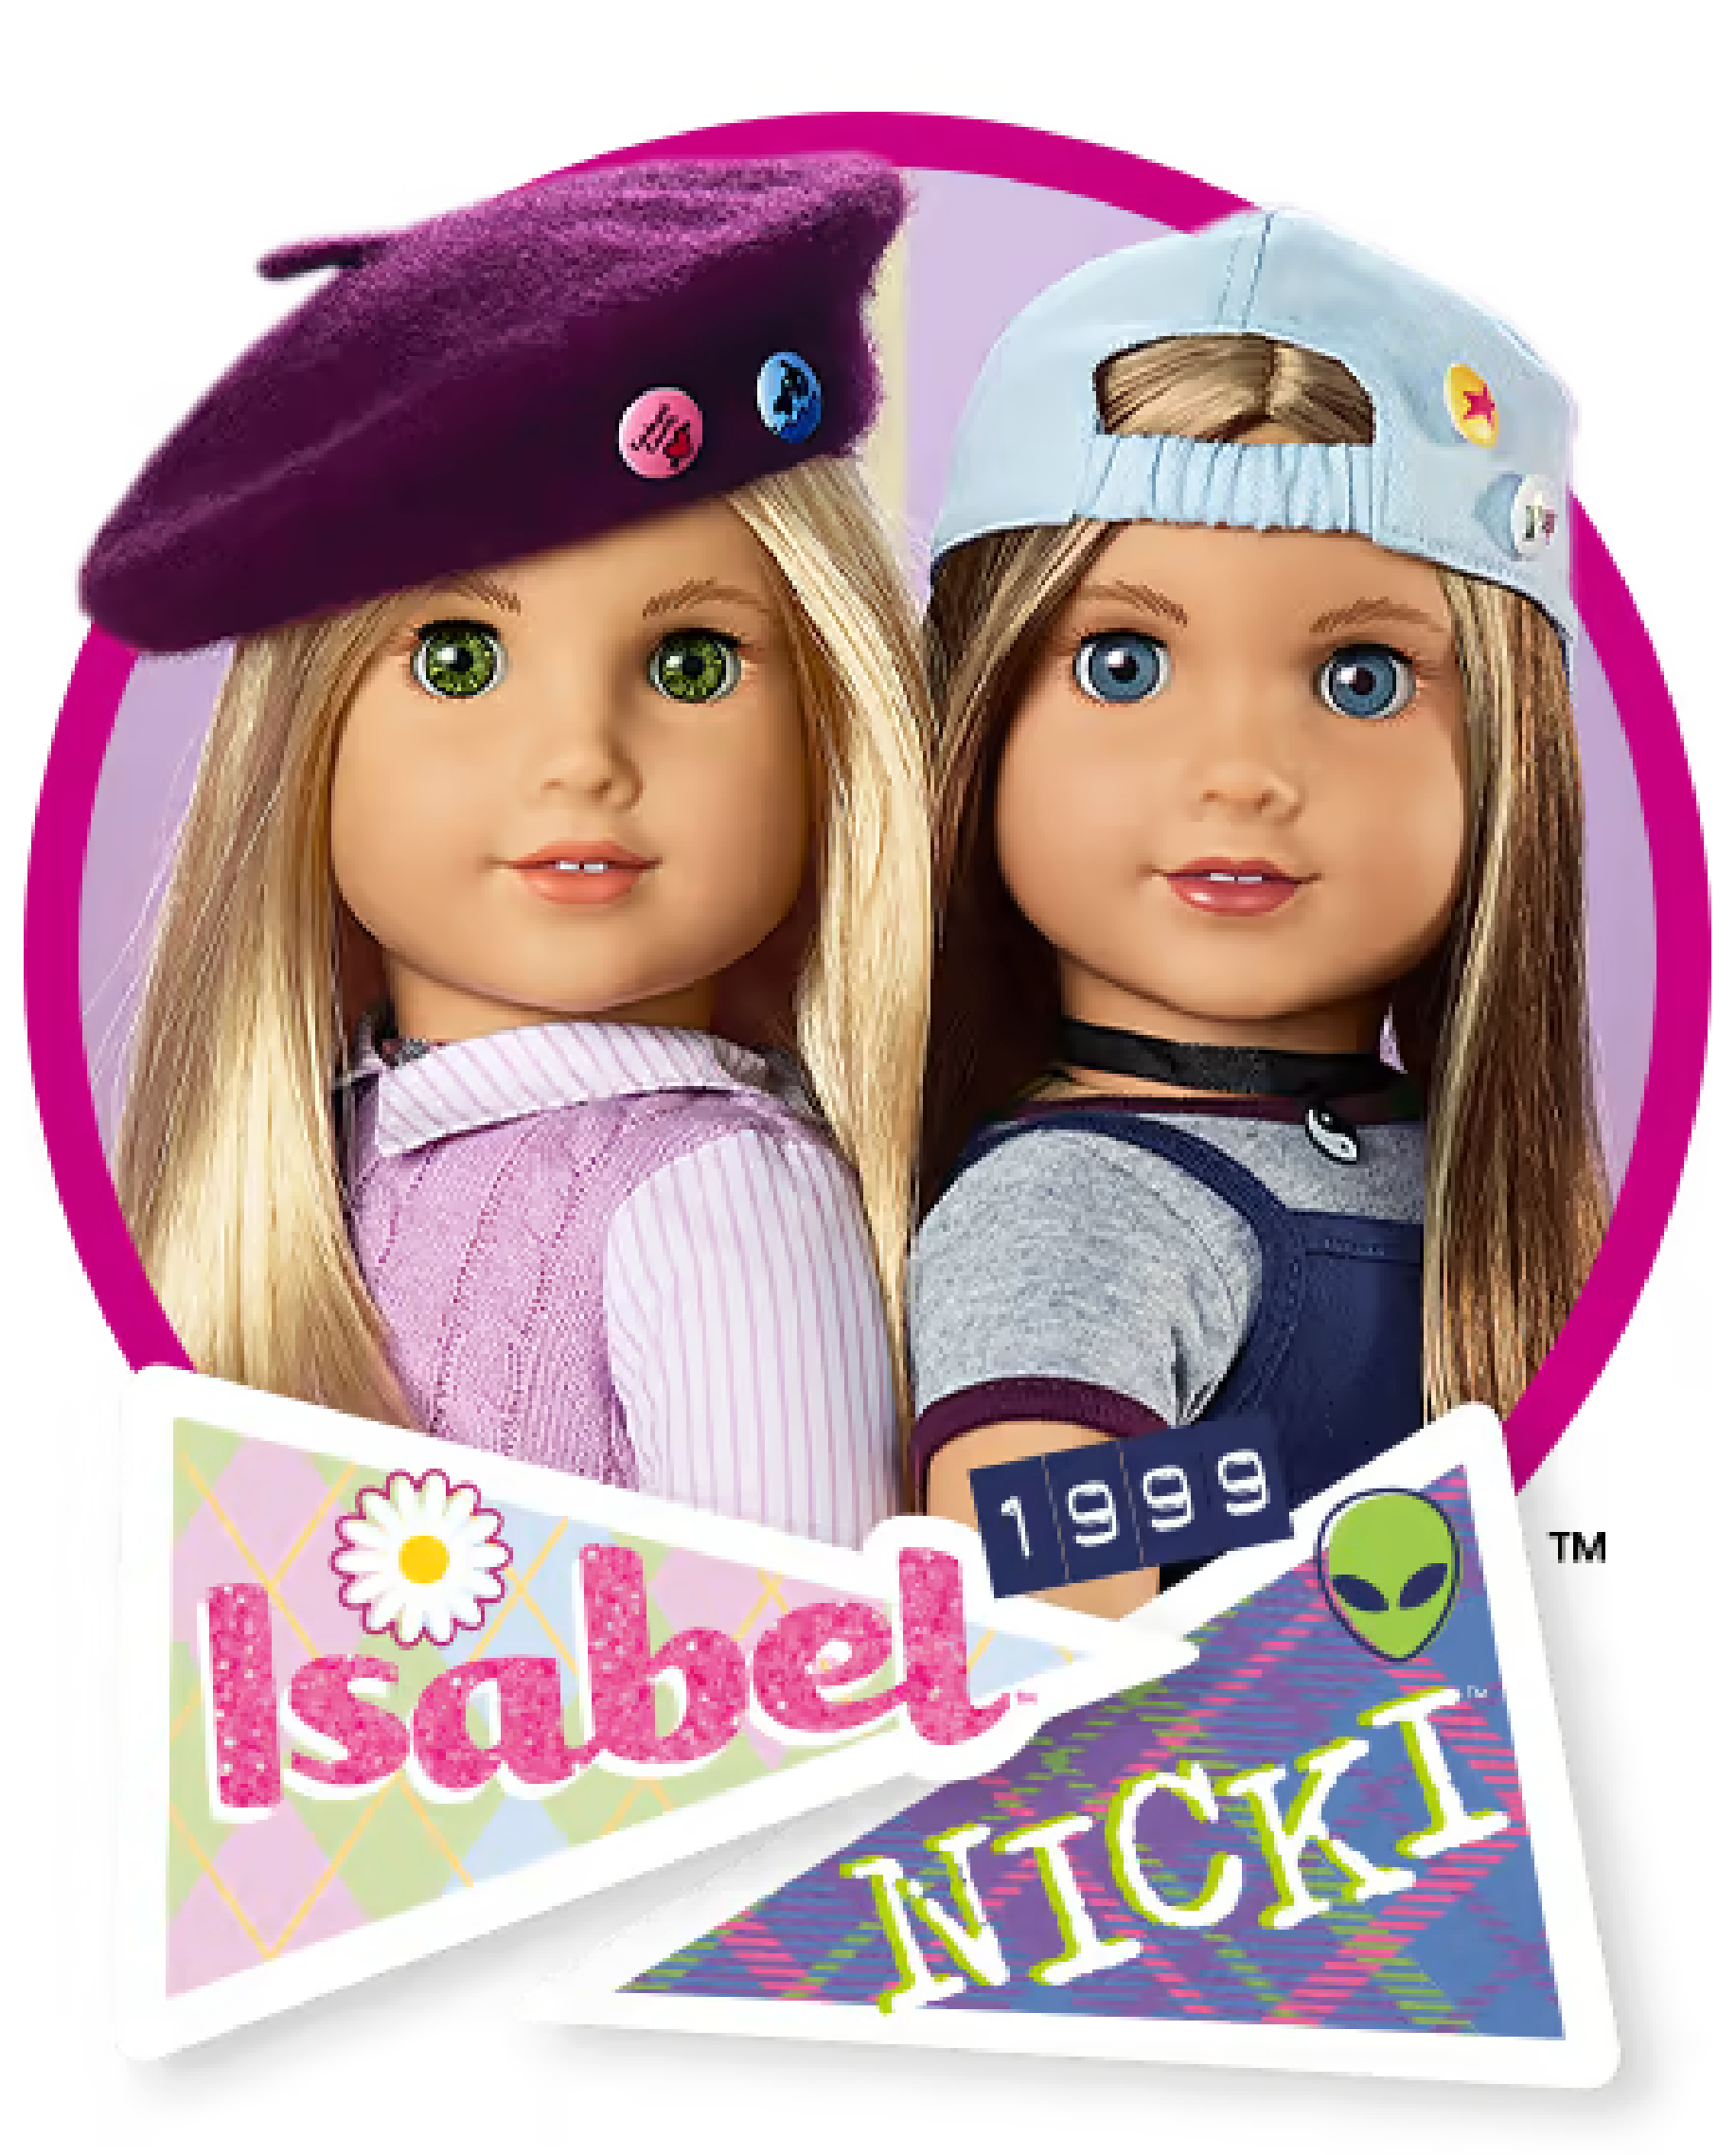 Isabel and Nicki, 1999